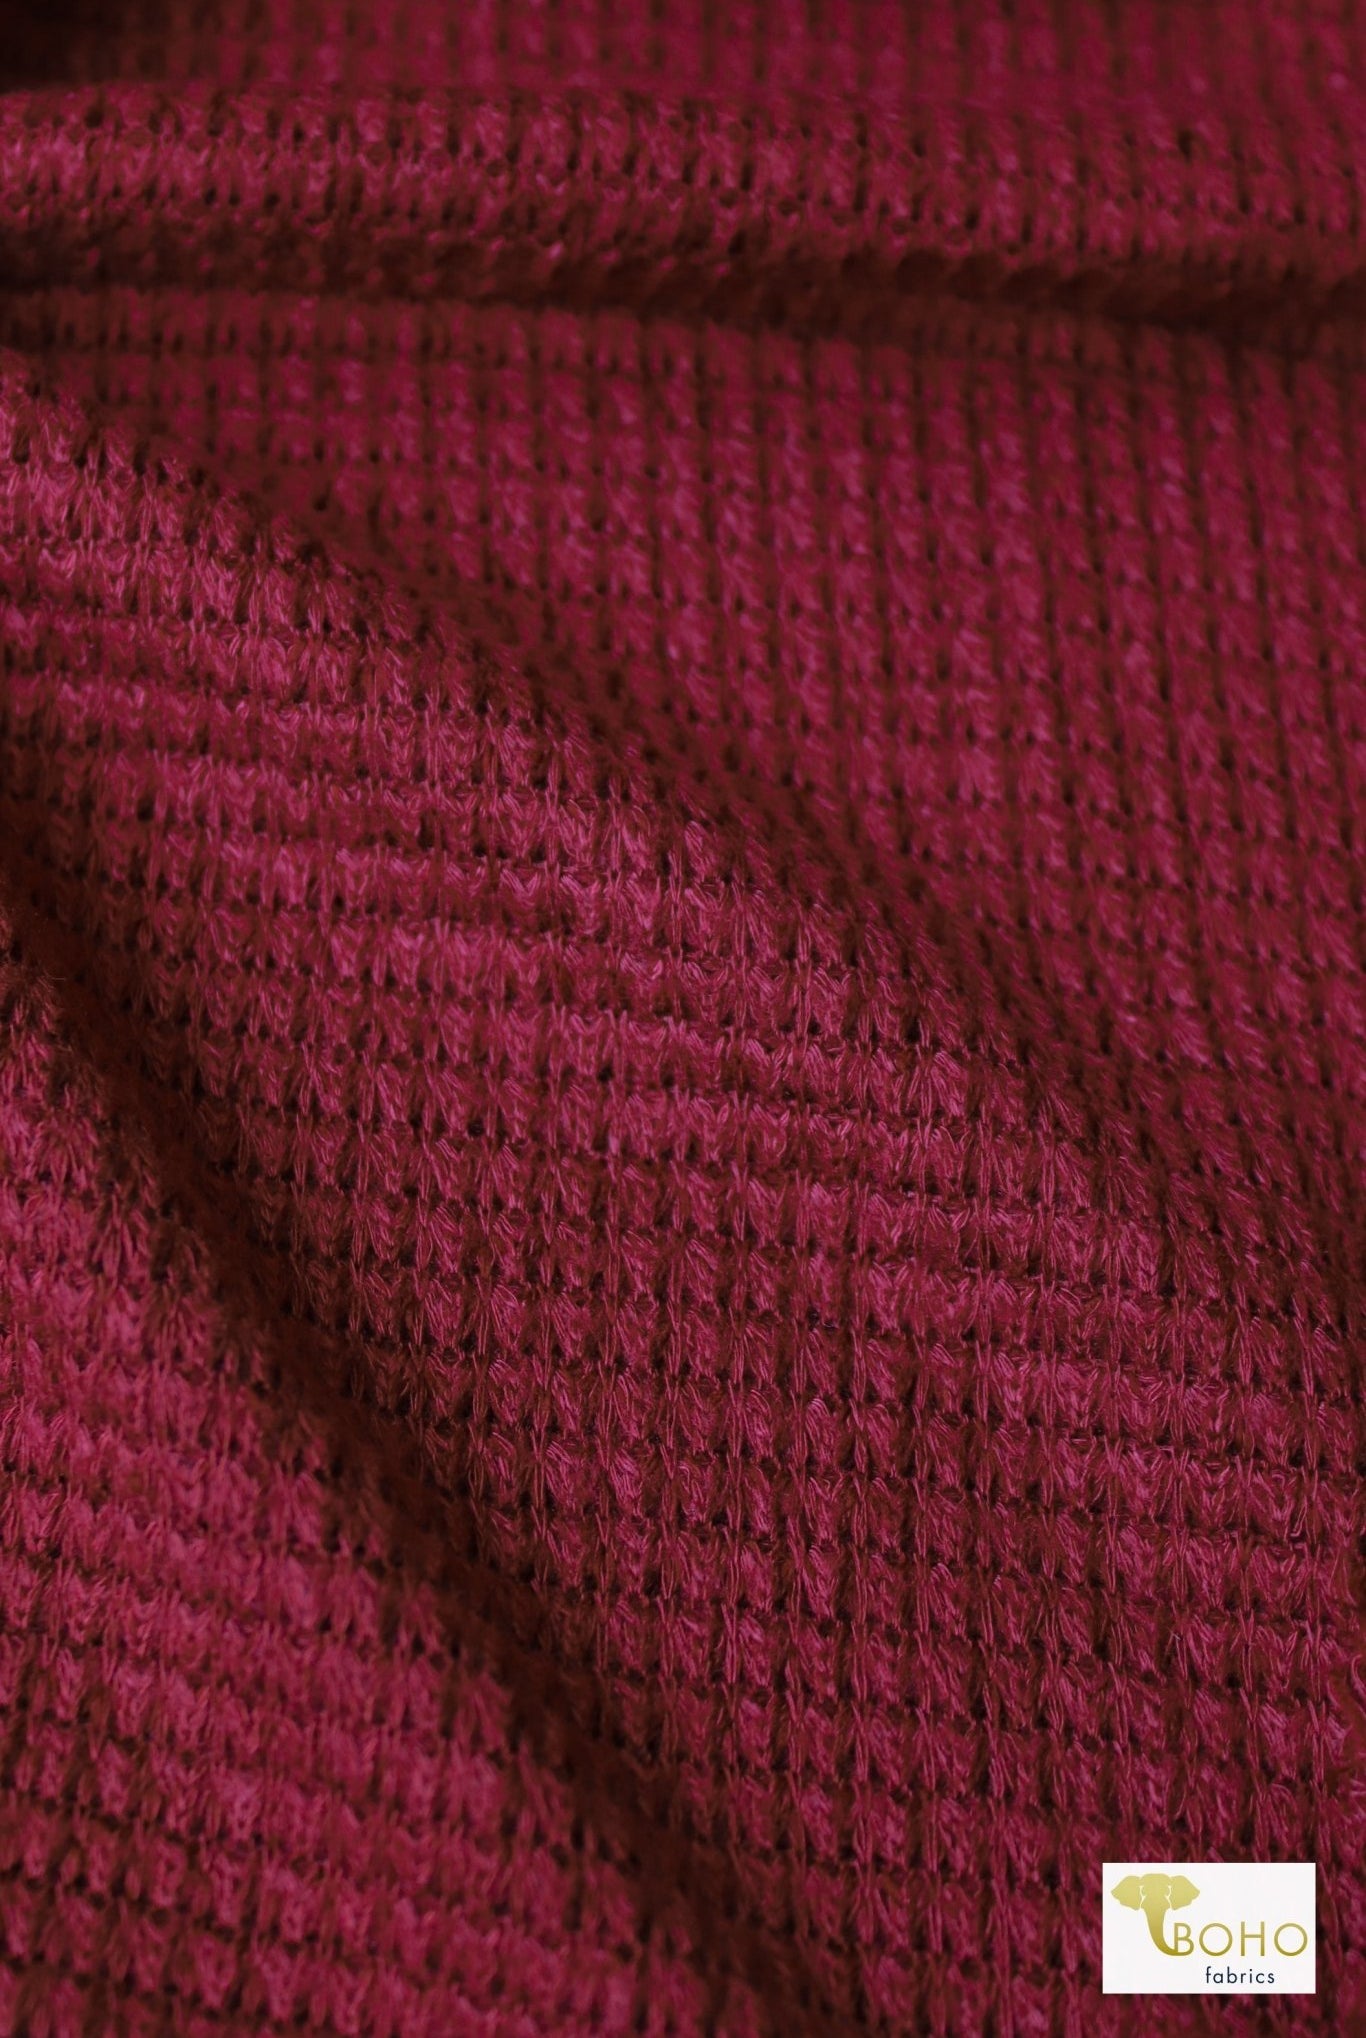 Beet Red, Cotton Waffle Knit - Boho Fabrics